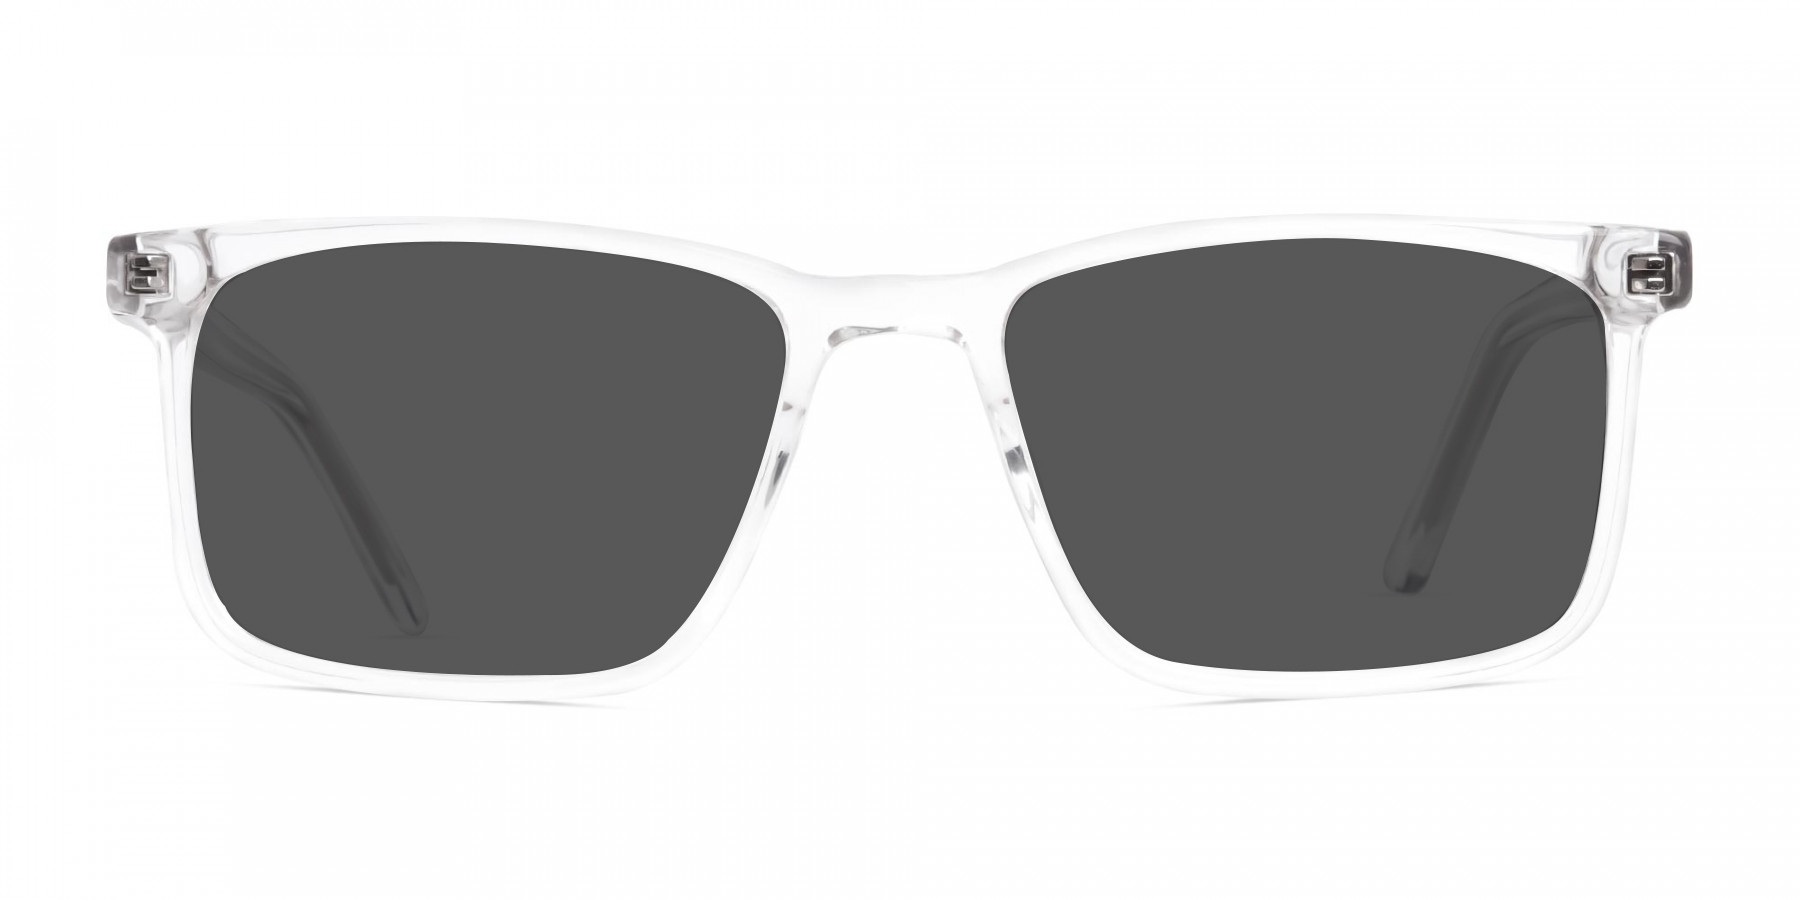 BUSK 6-S - Transparent Frame Sunglasses for Men & Women | Specscart